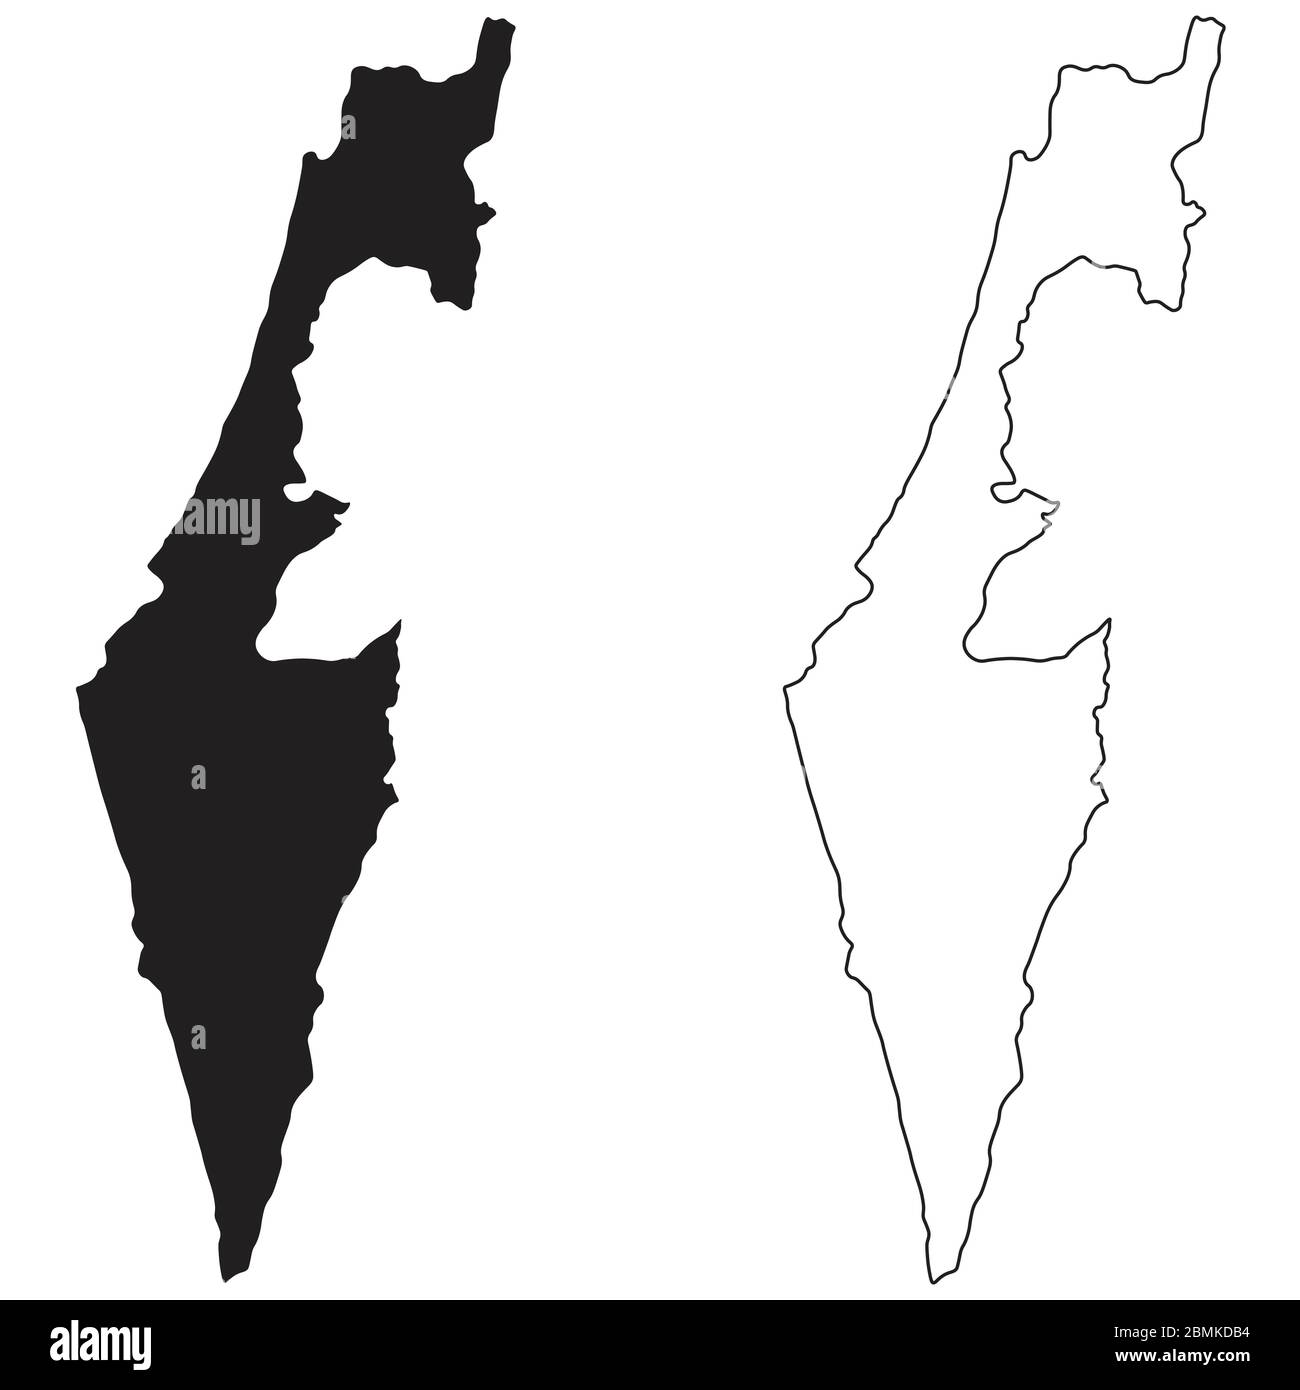 Länderkarte Israel. Schwarze Silhouette und Umriss isoliert auf weißem Hintergrund. EPS-Vektor Stock Vektor